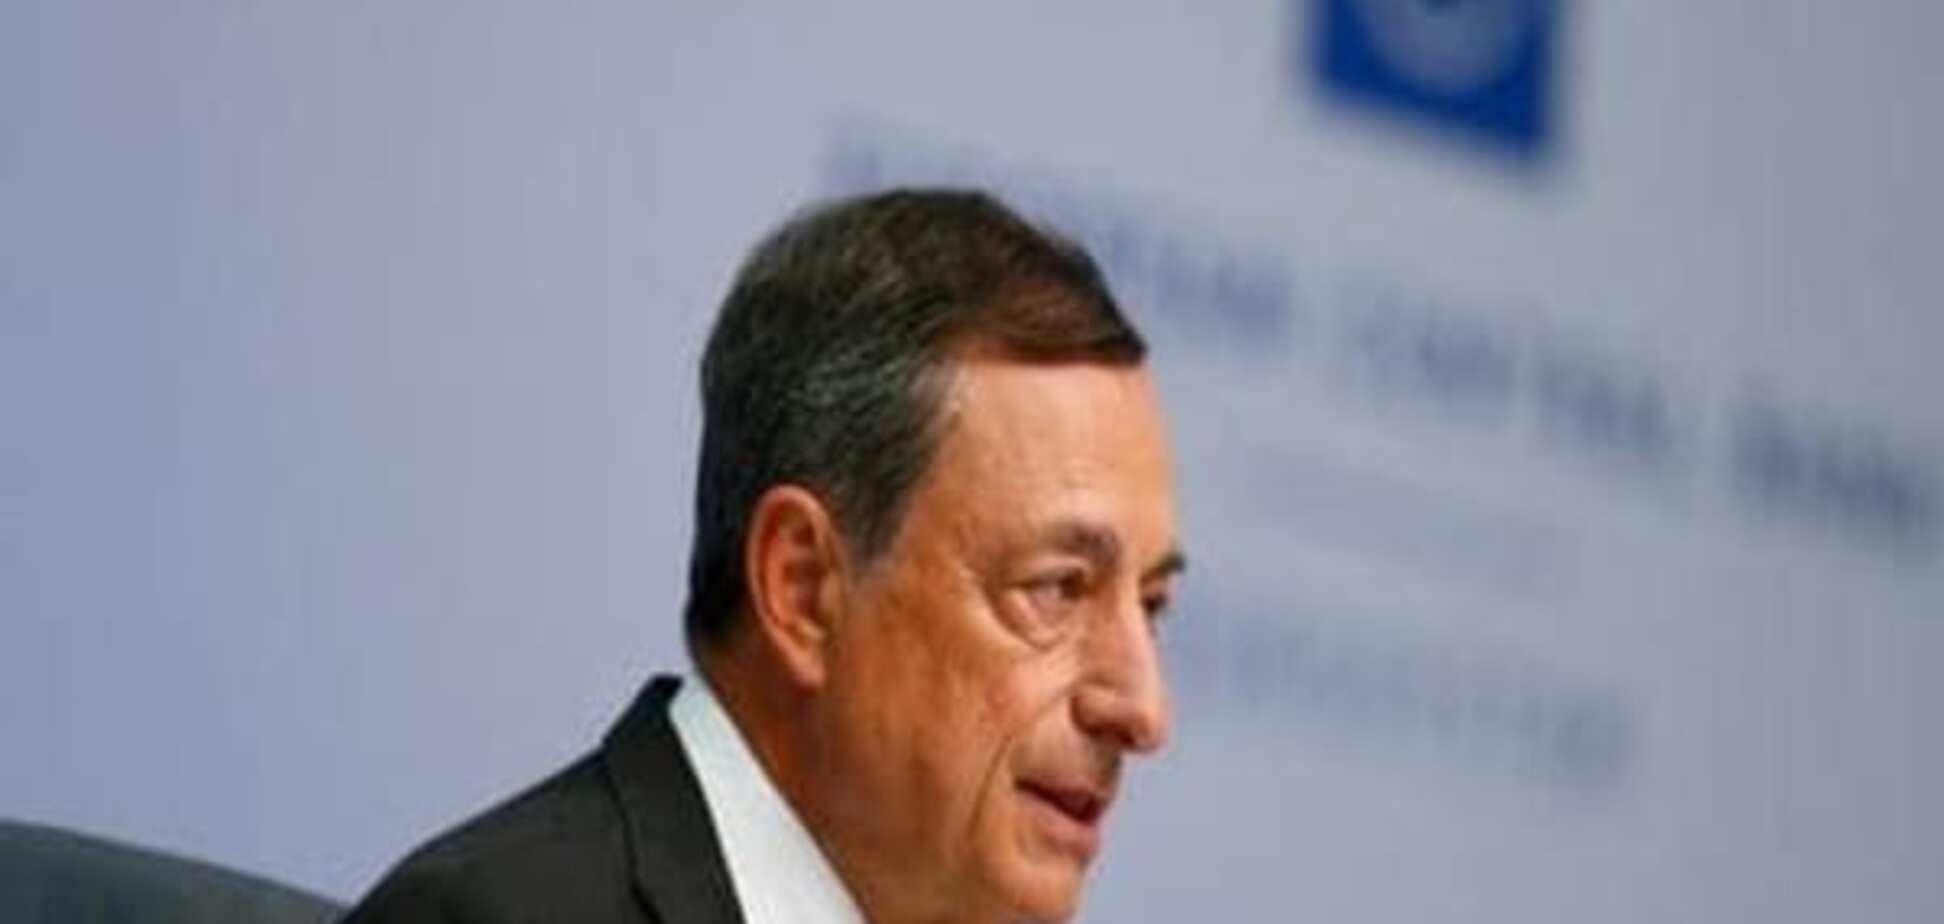 'Супер-Марио' держит курс: глава ЕЦБ верен политике дешевых денег